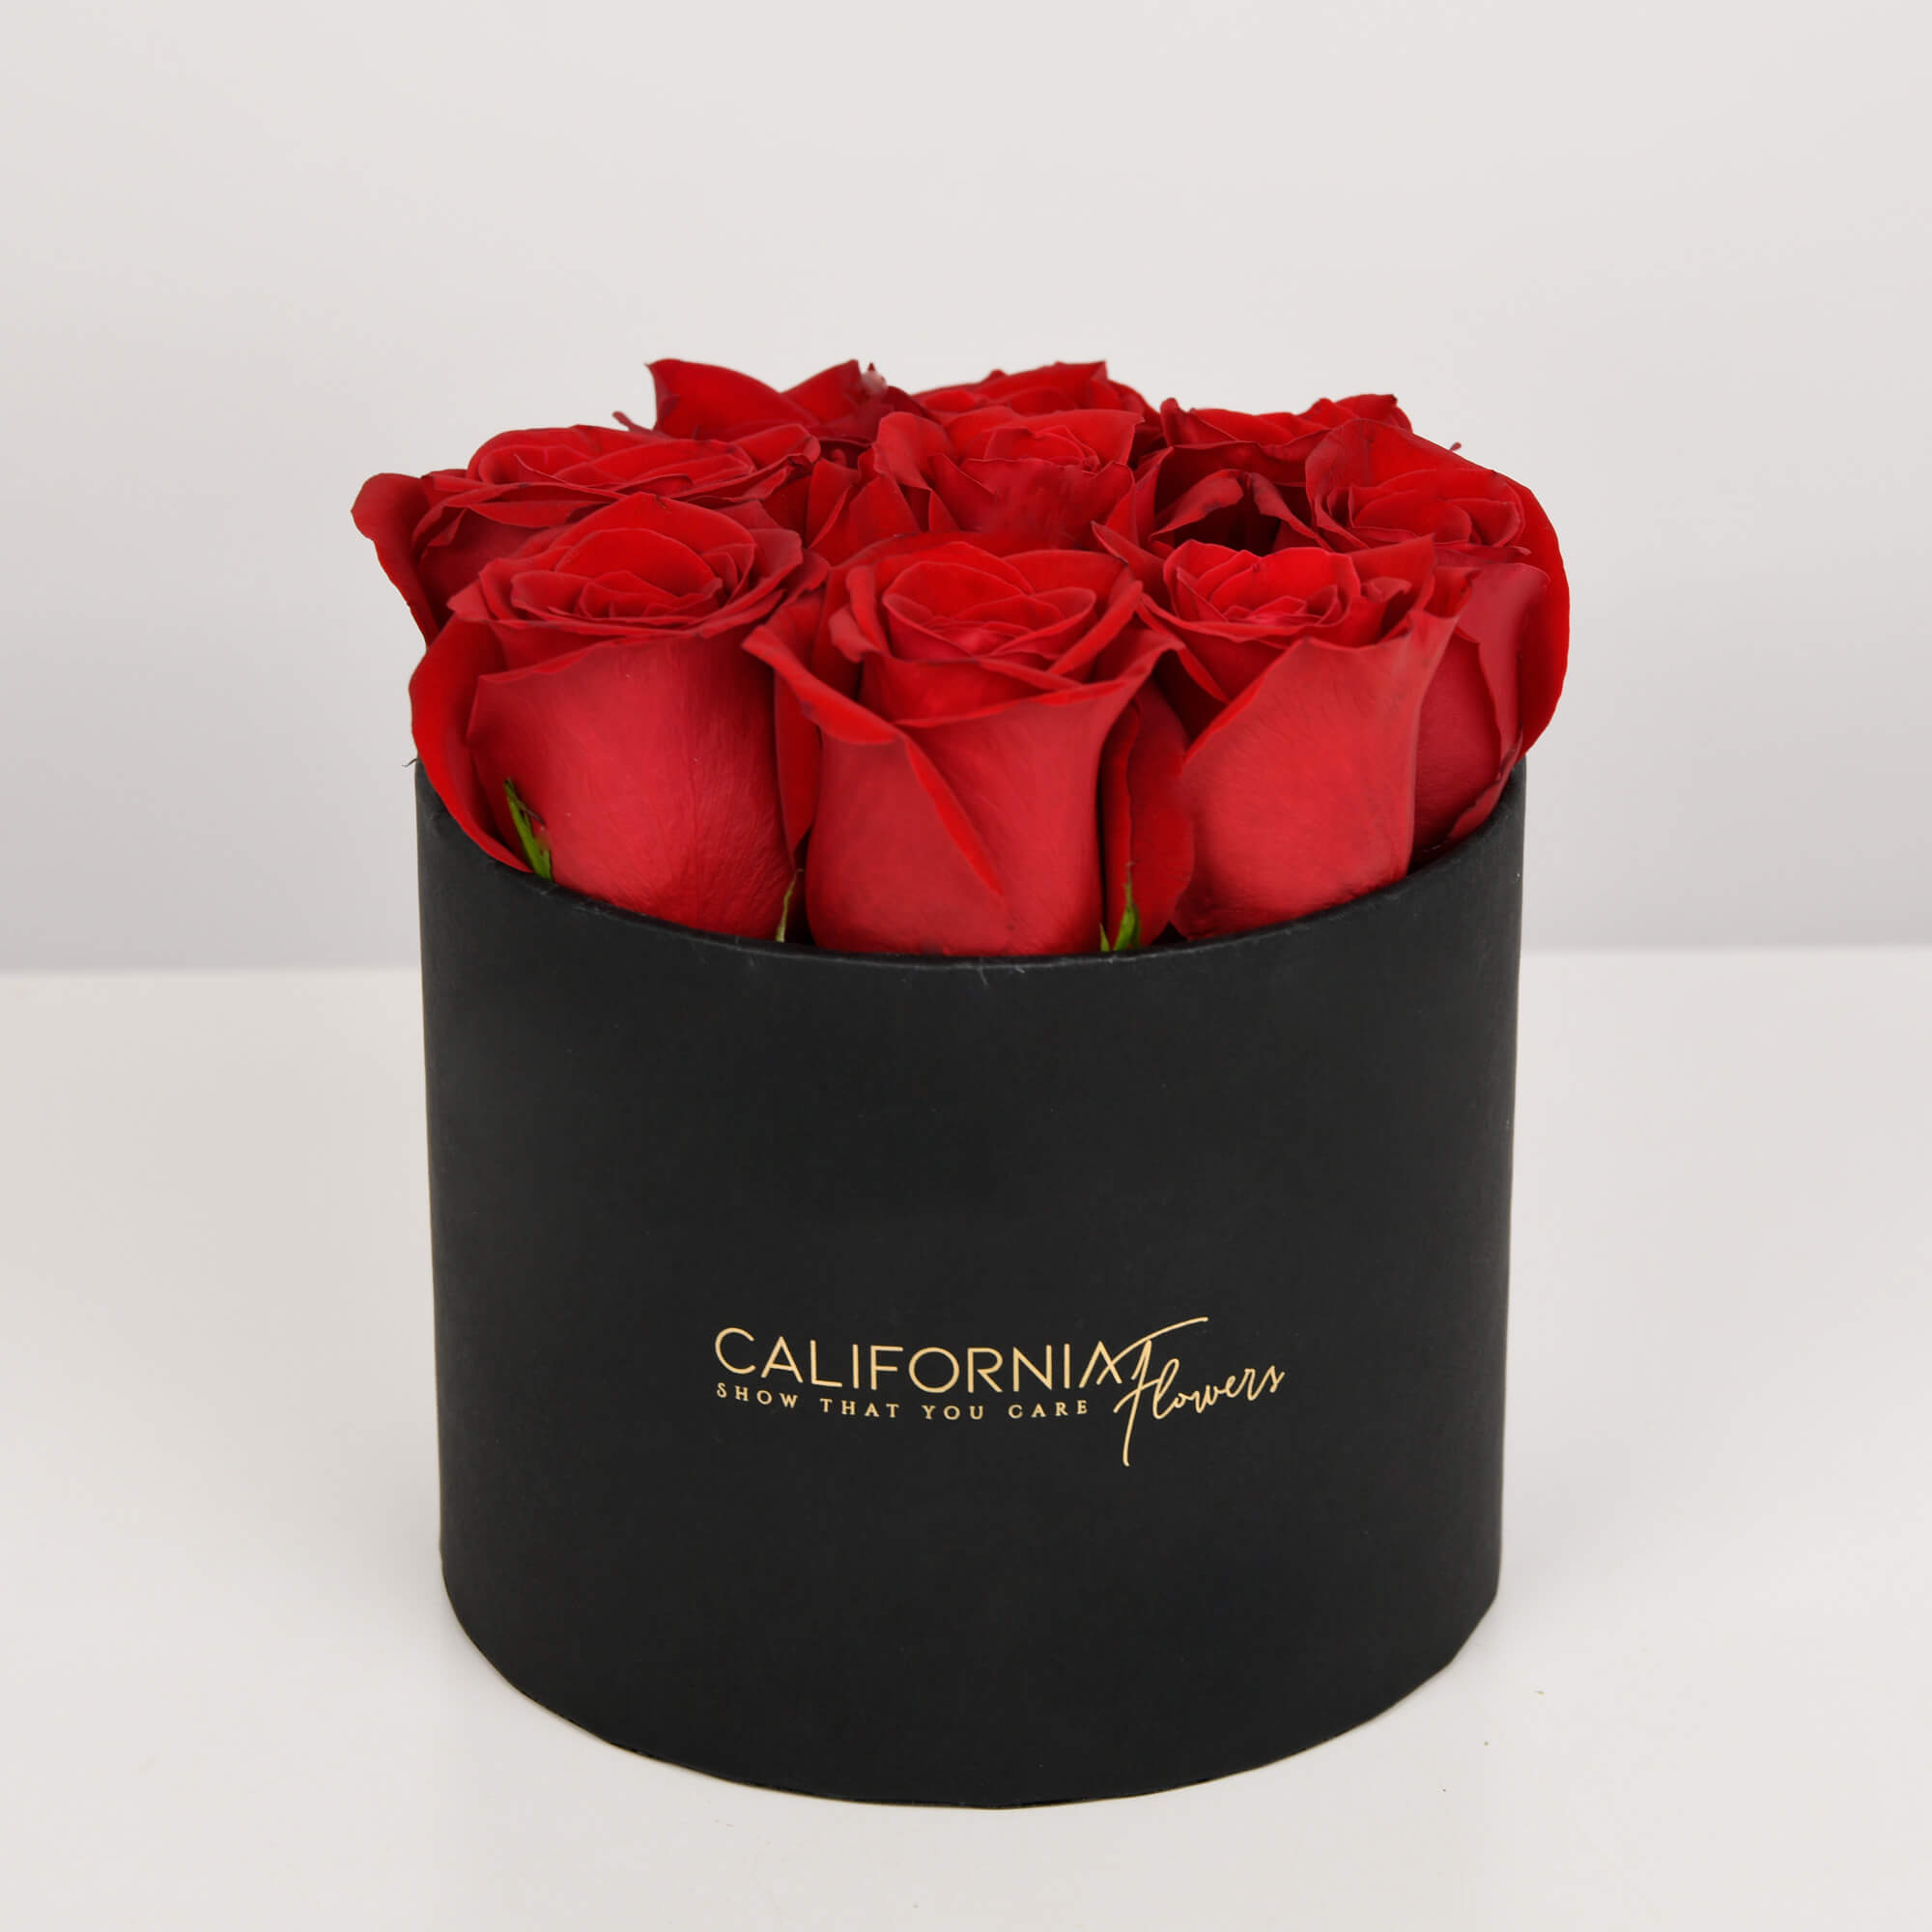 Cutie neagra cu 9 trandafiri rosii